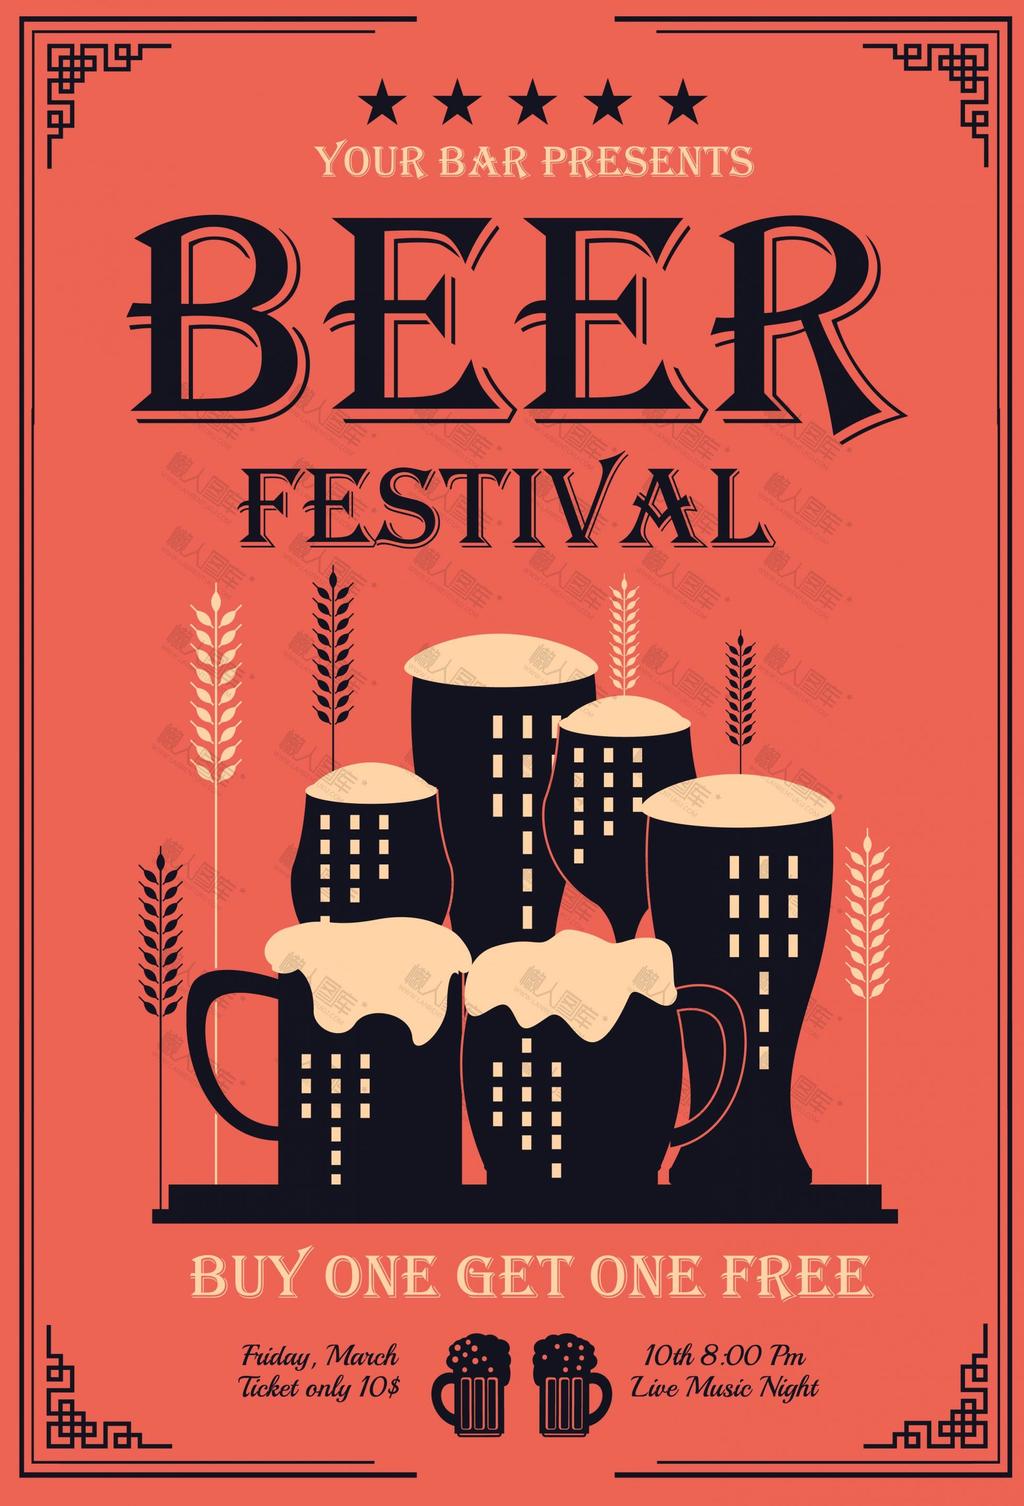 啤酒节插画海报